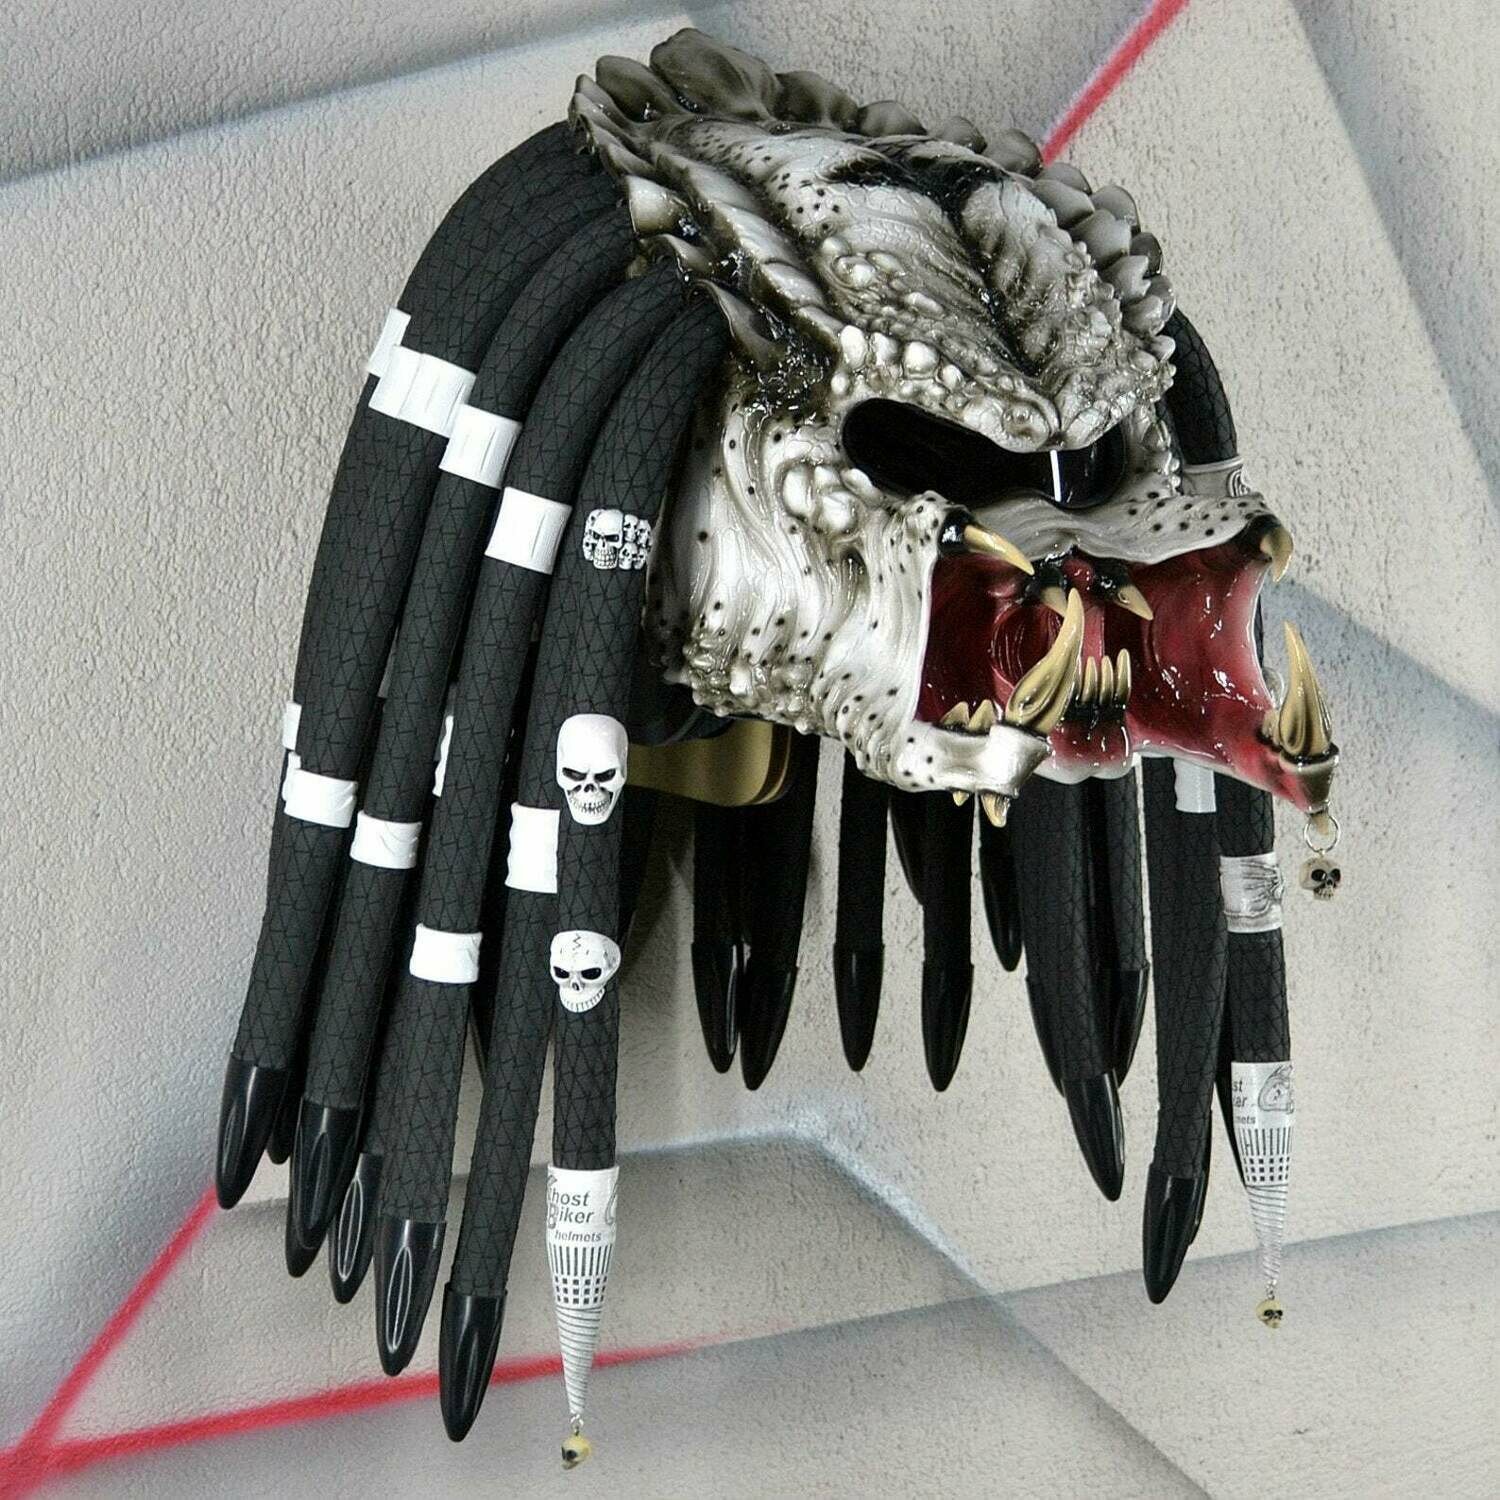 Predator motorcycle helmet – GhostBikerHelmets – Unique motorcycle helmets